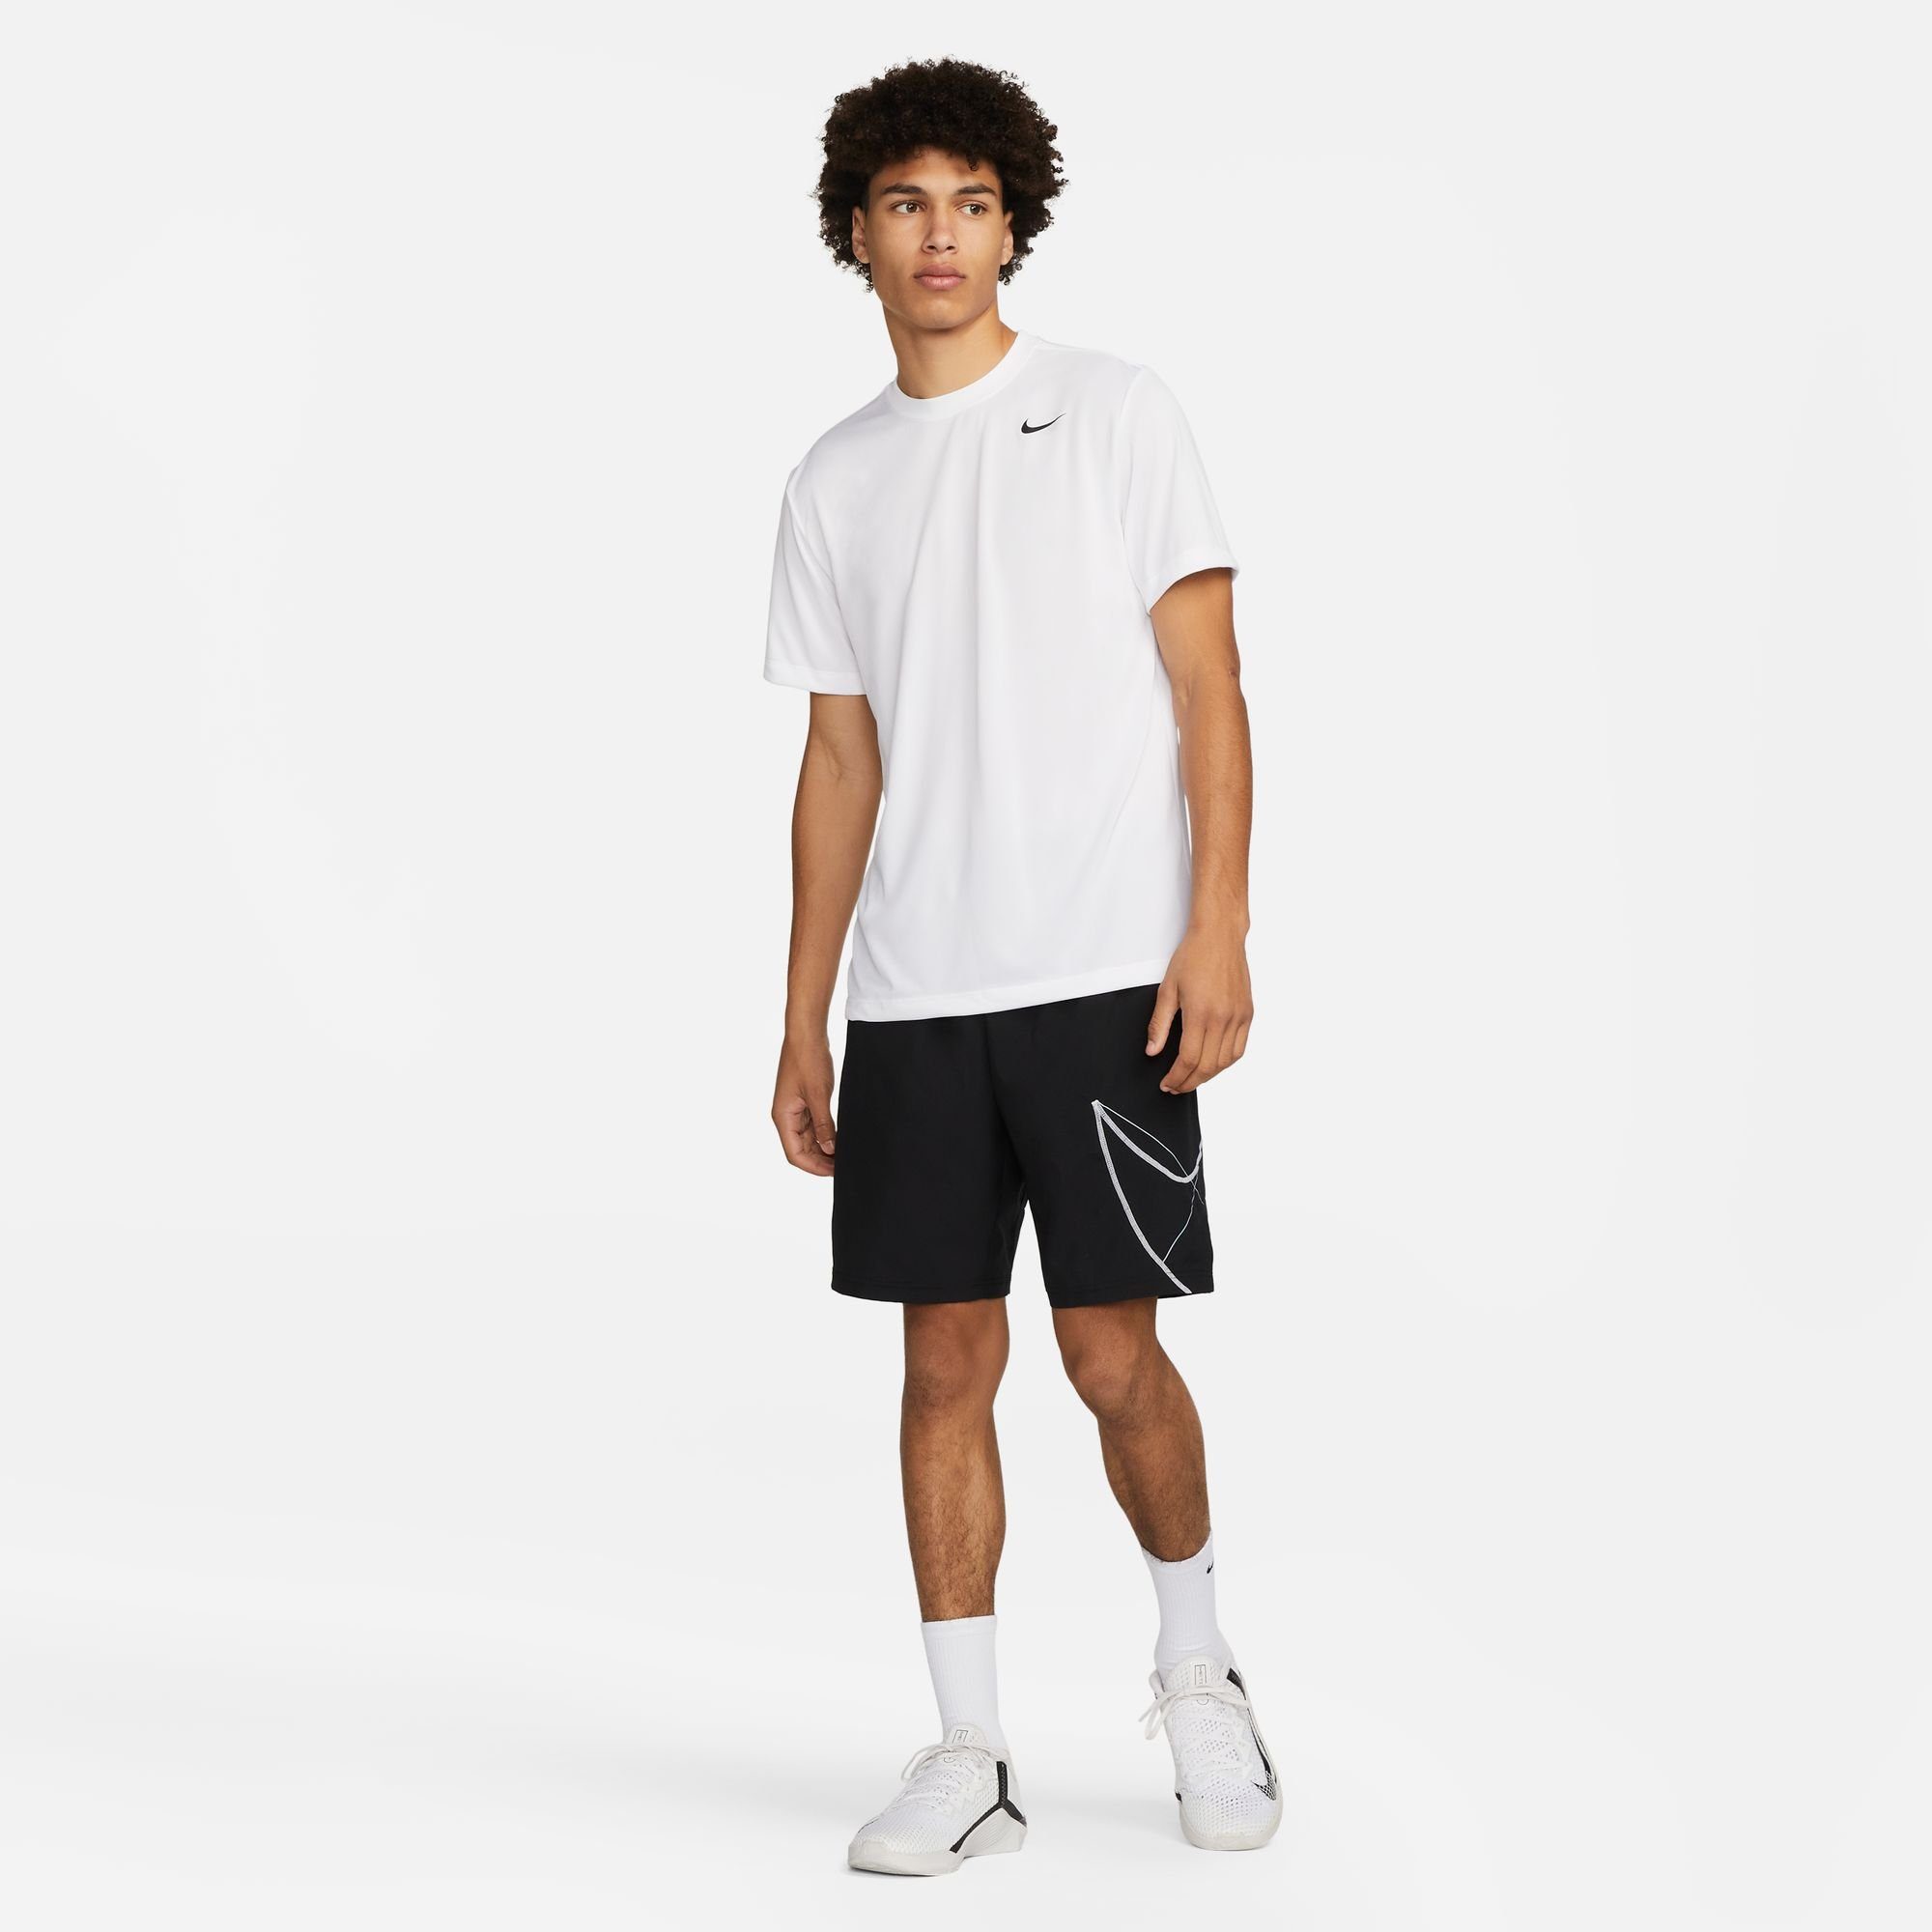 WHITE/BLACK T-SHIRT Nike MEN'S DRI-FIT LEGEND Trainingsshirt FITNESS